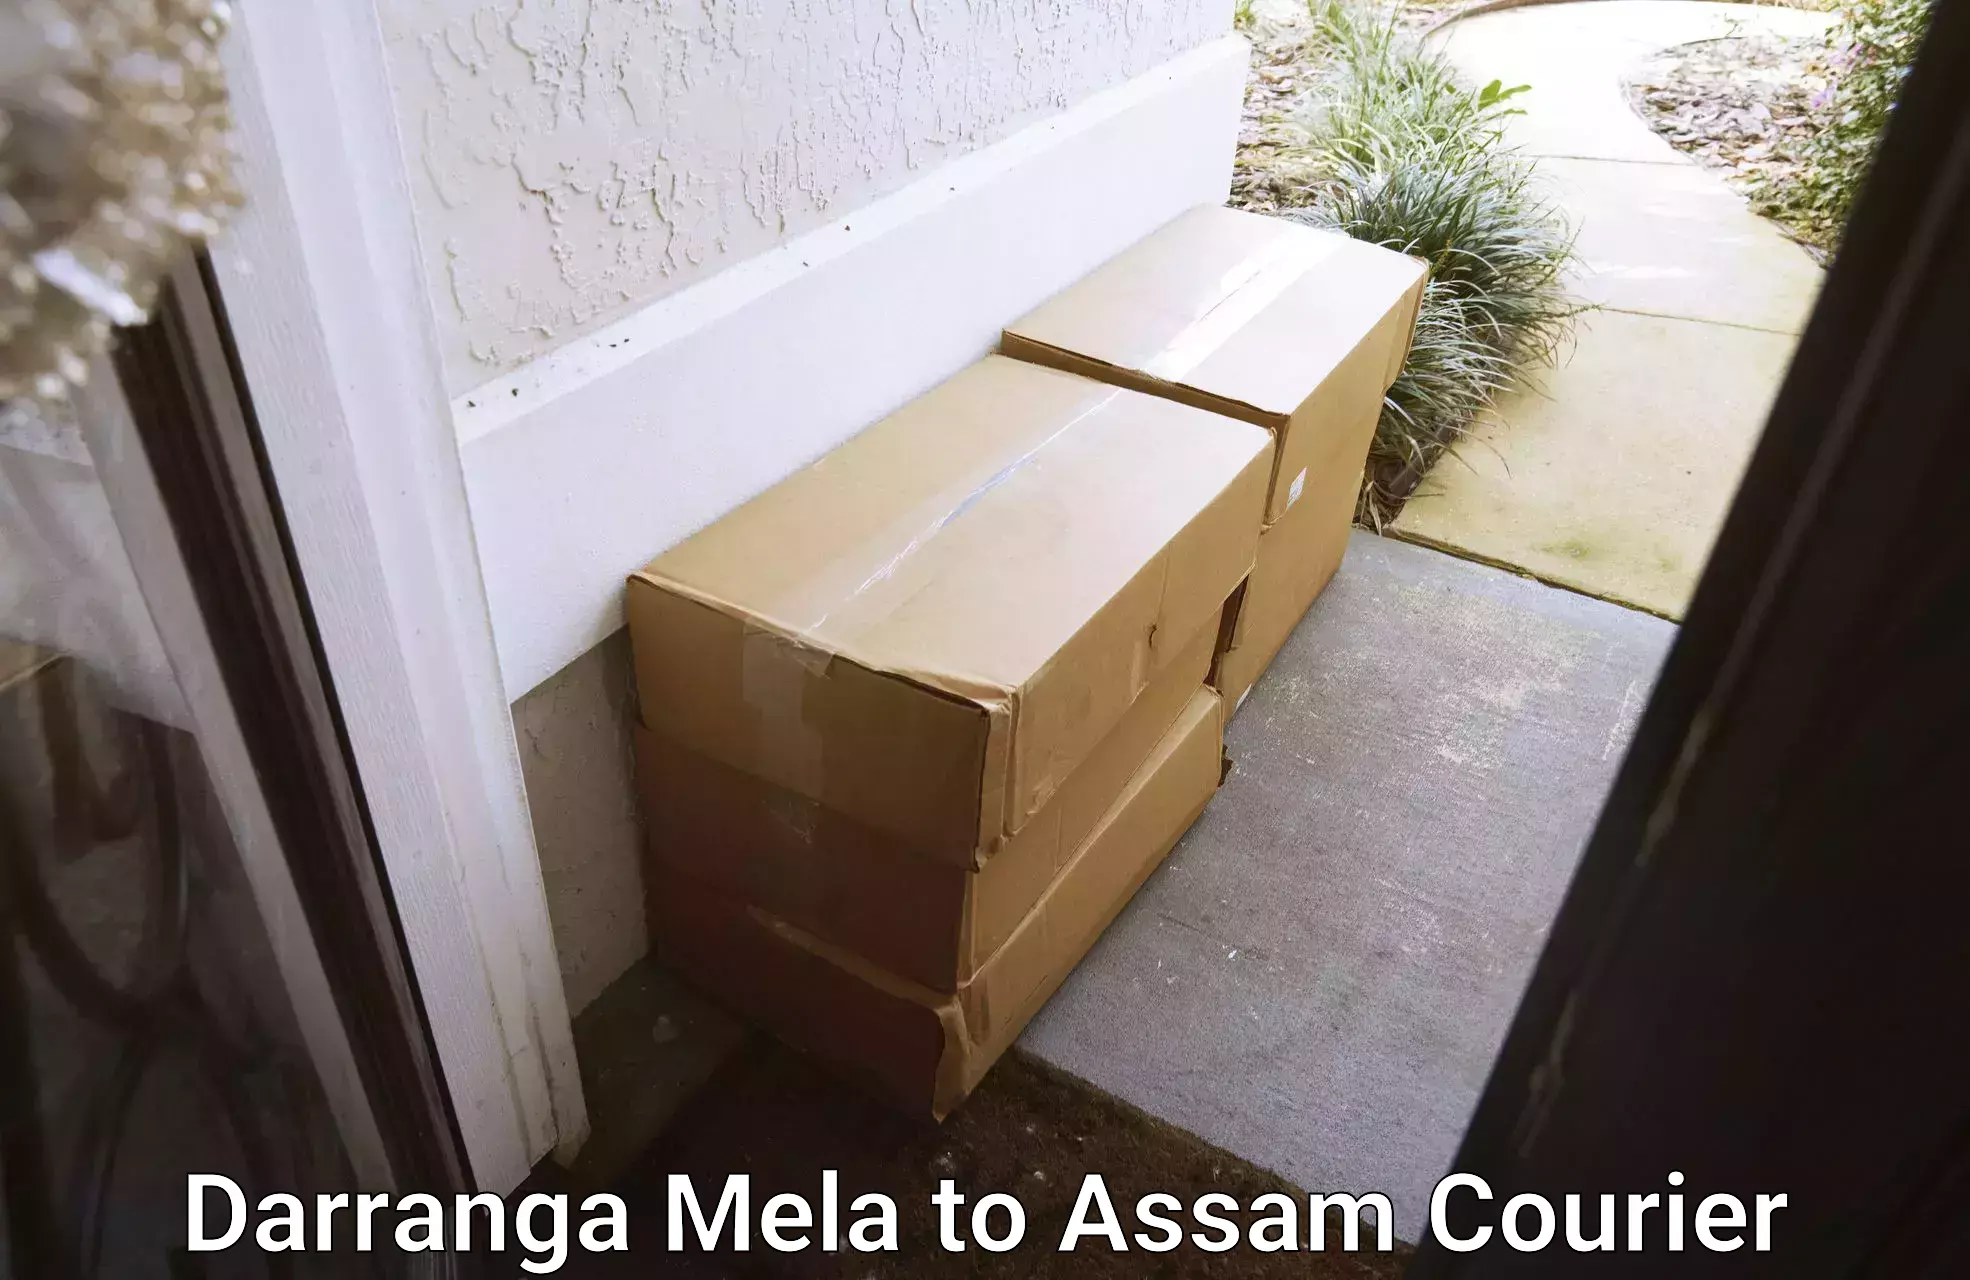 Enhanced delivery experience Darranga Mela to Digboi